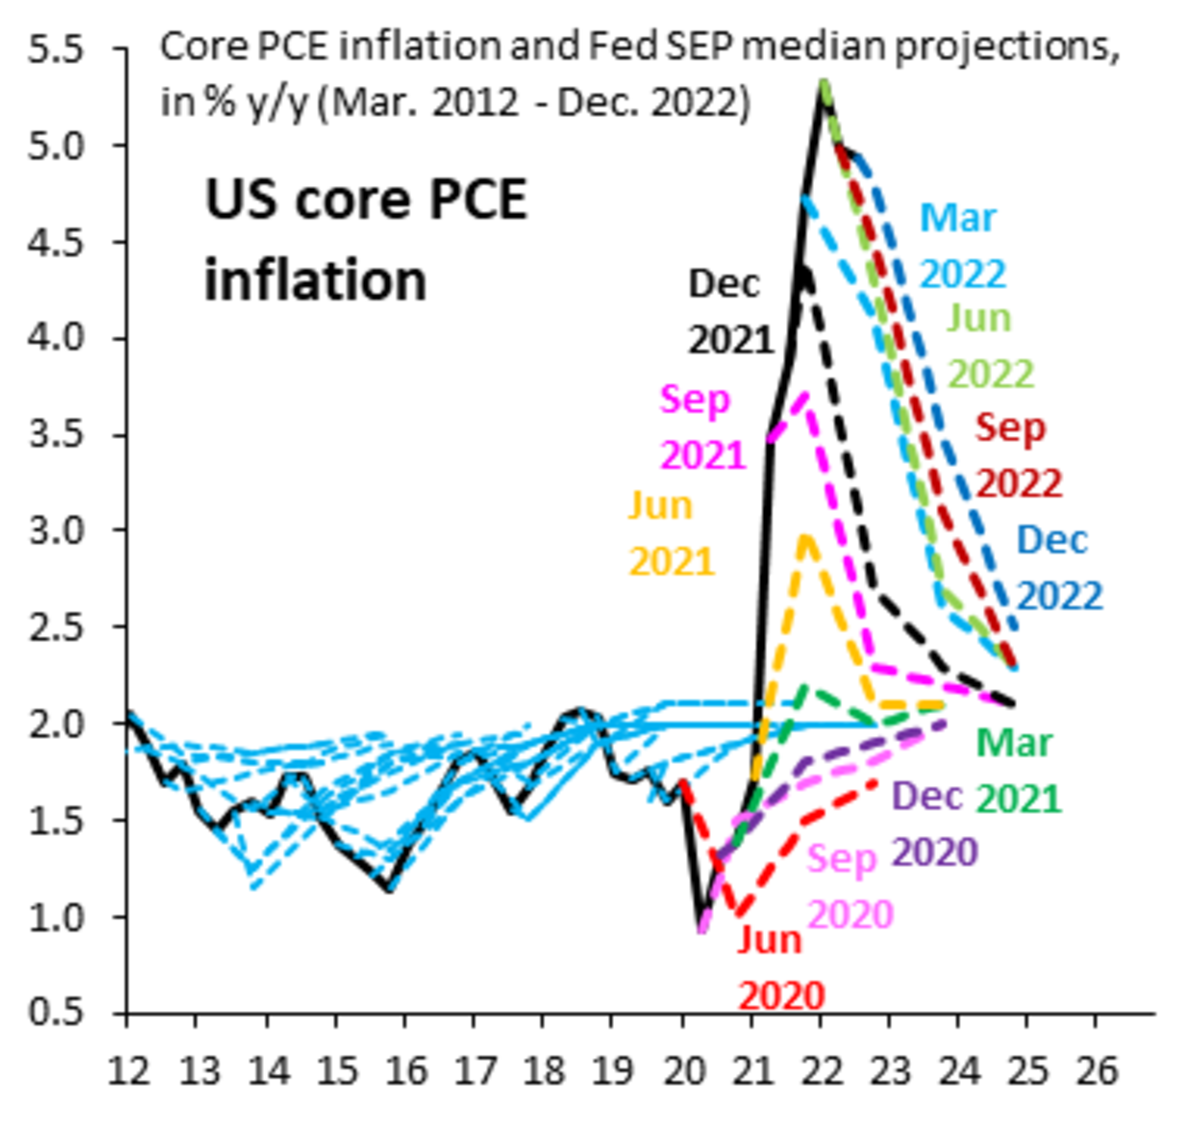 El mercado espera casi unánimemente una subida de tipos del 0.25 % durante la reunión del FOMC de febrero, aunque muchos esperan una "pausa" poco después. Rogamos diferir.